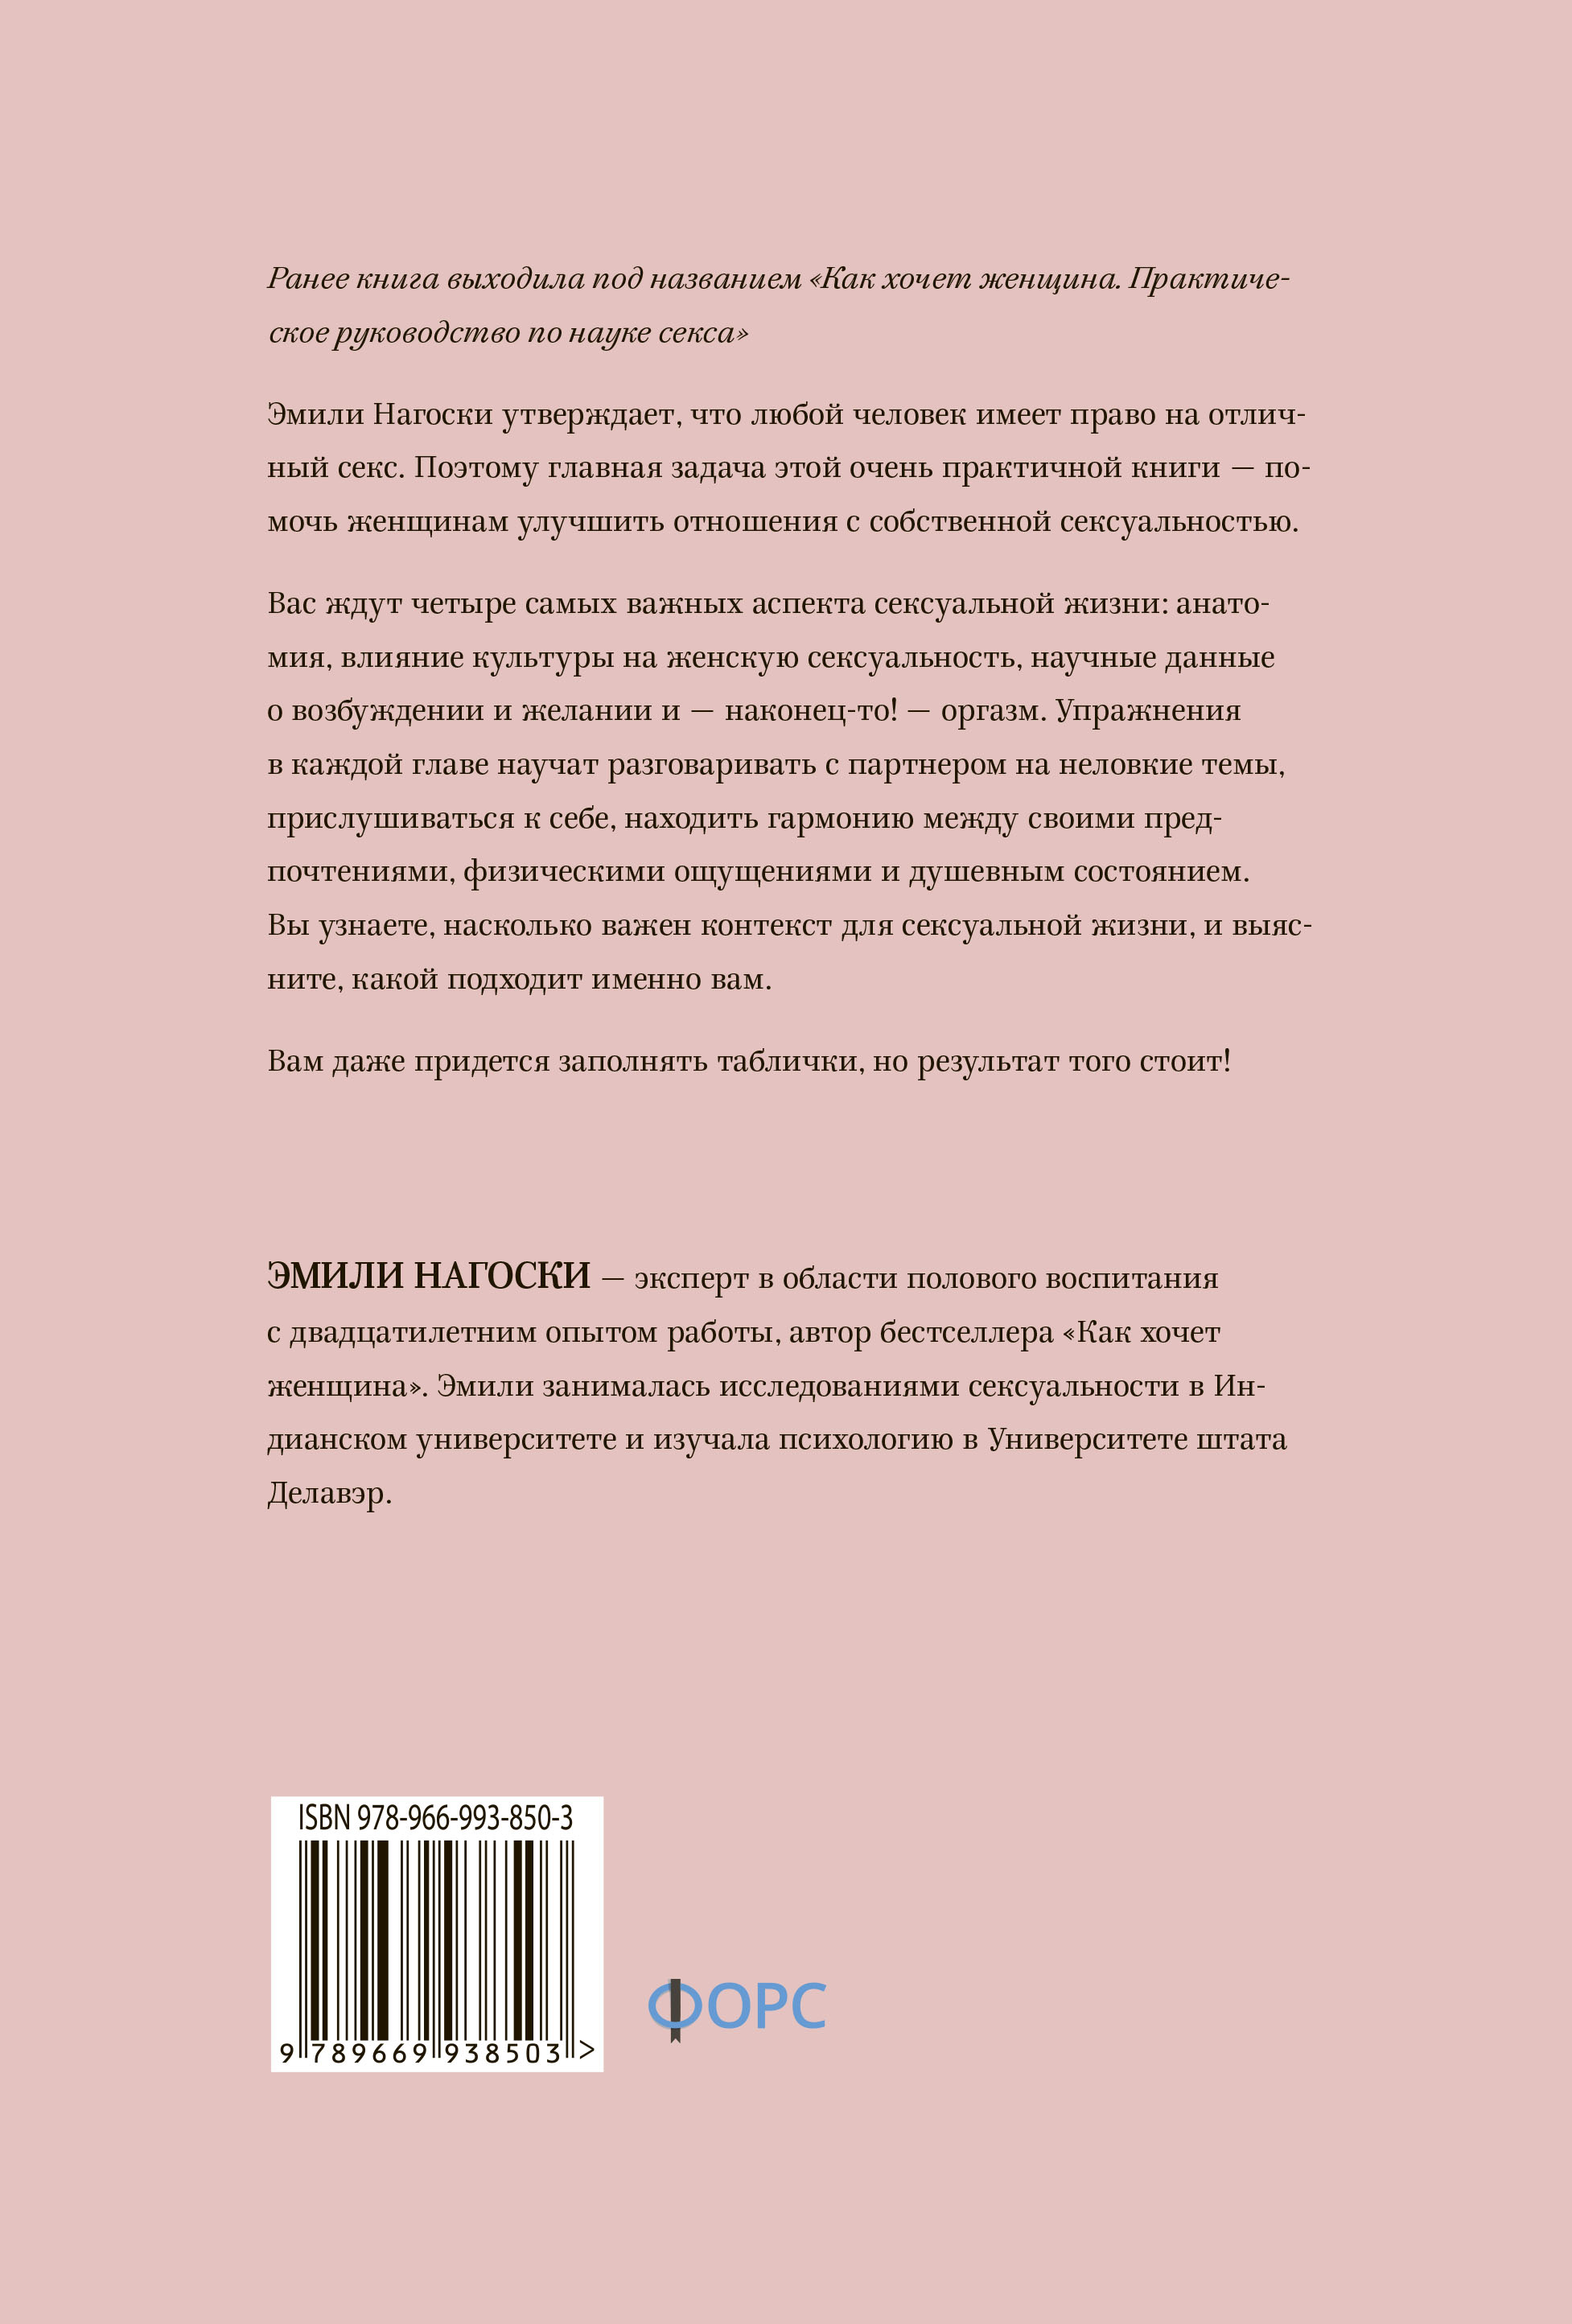 Купить книгу «Как хочет женщина. Практика» Эмили Нагоски в Киеве, Украине |  цены, отзывы в интернет-магазине Book24 | ISBN 978-966-993-850-3